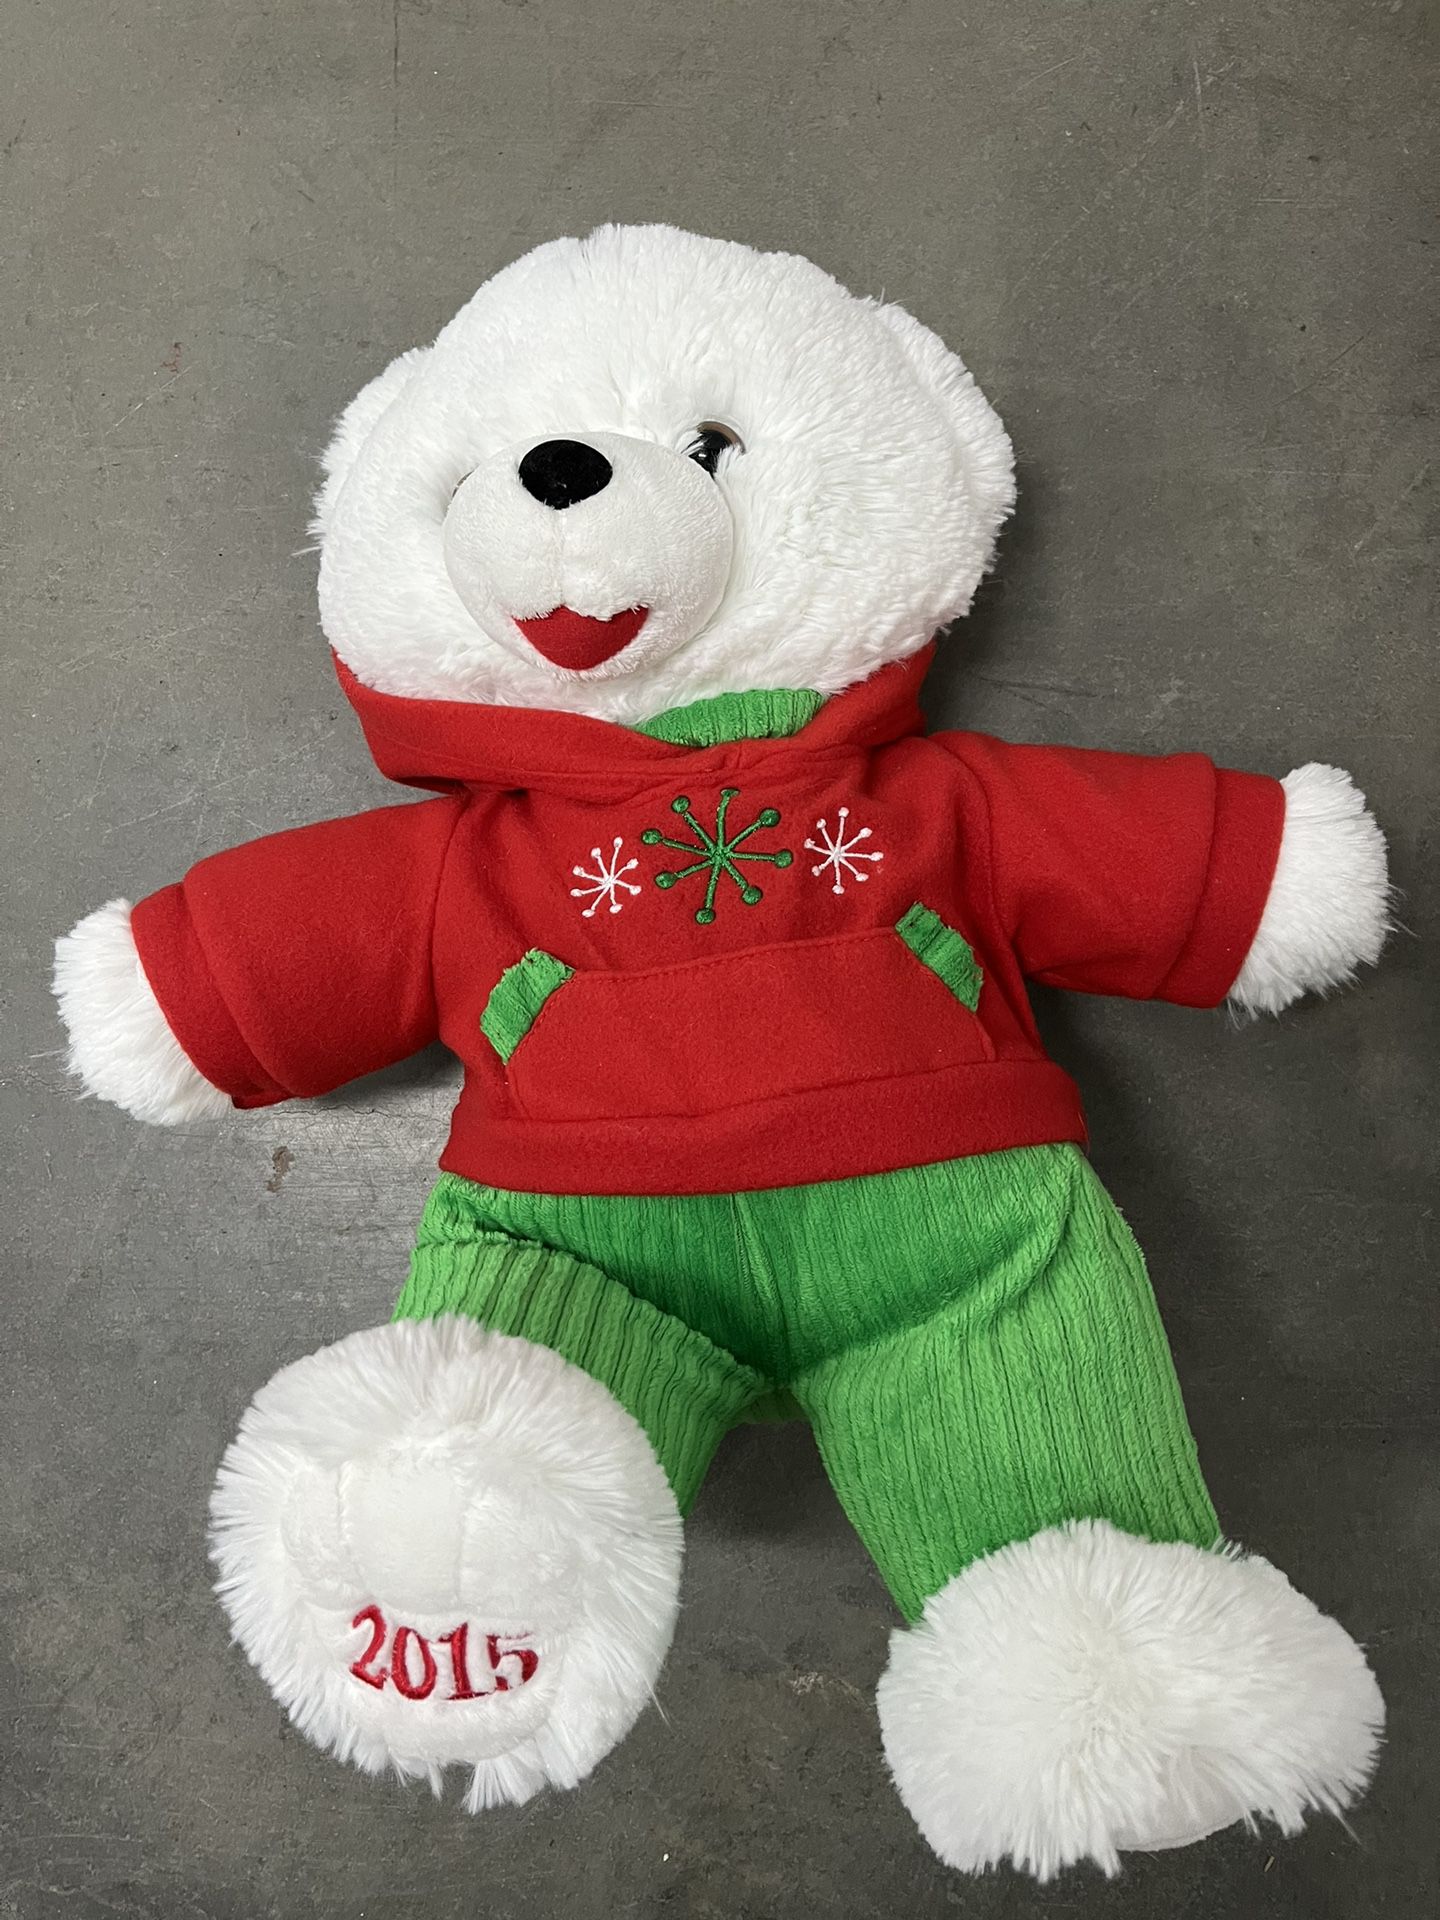 Christmas Teddy Bear 2015 On The Foot